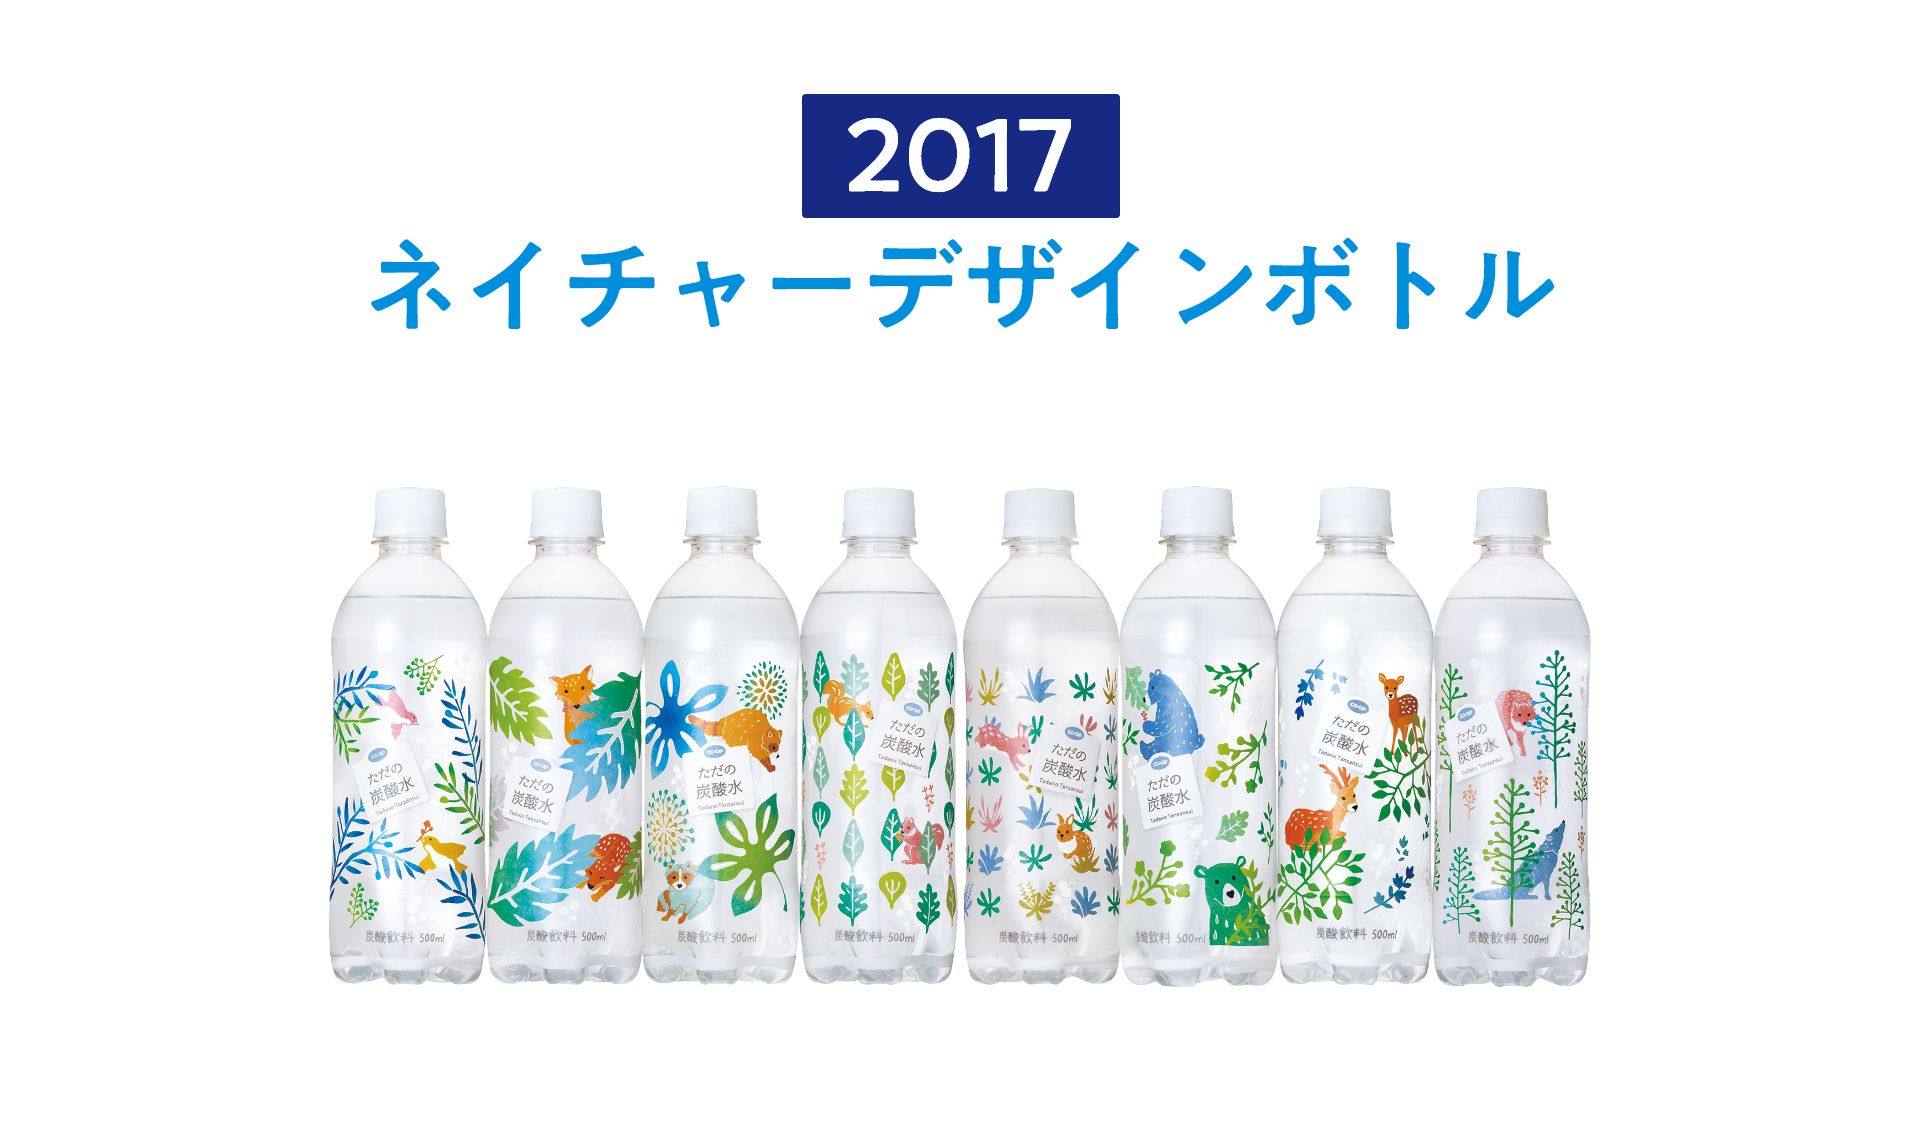 2017 ネイチャーデザインボトル